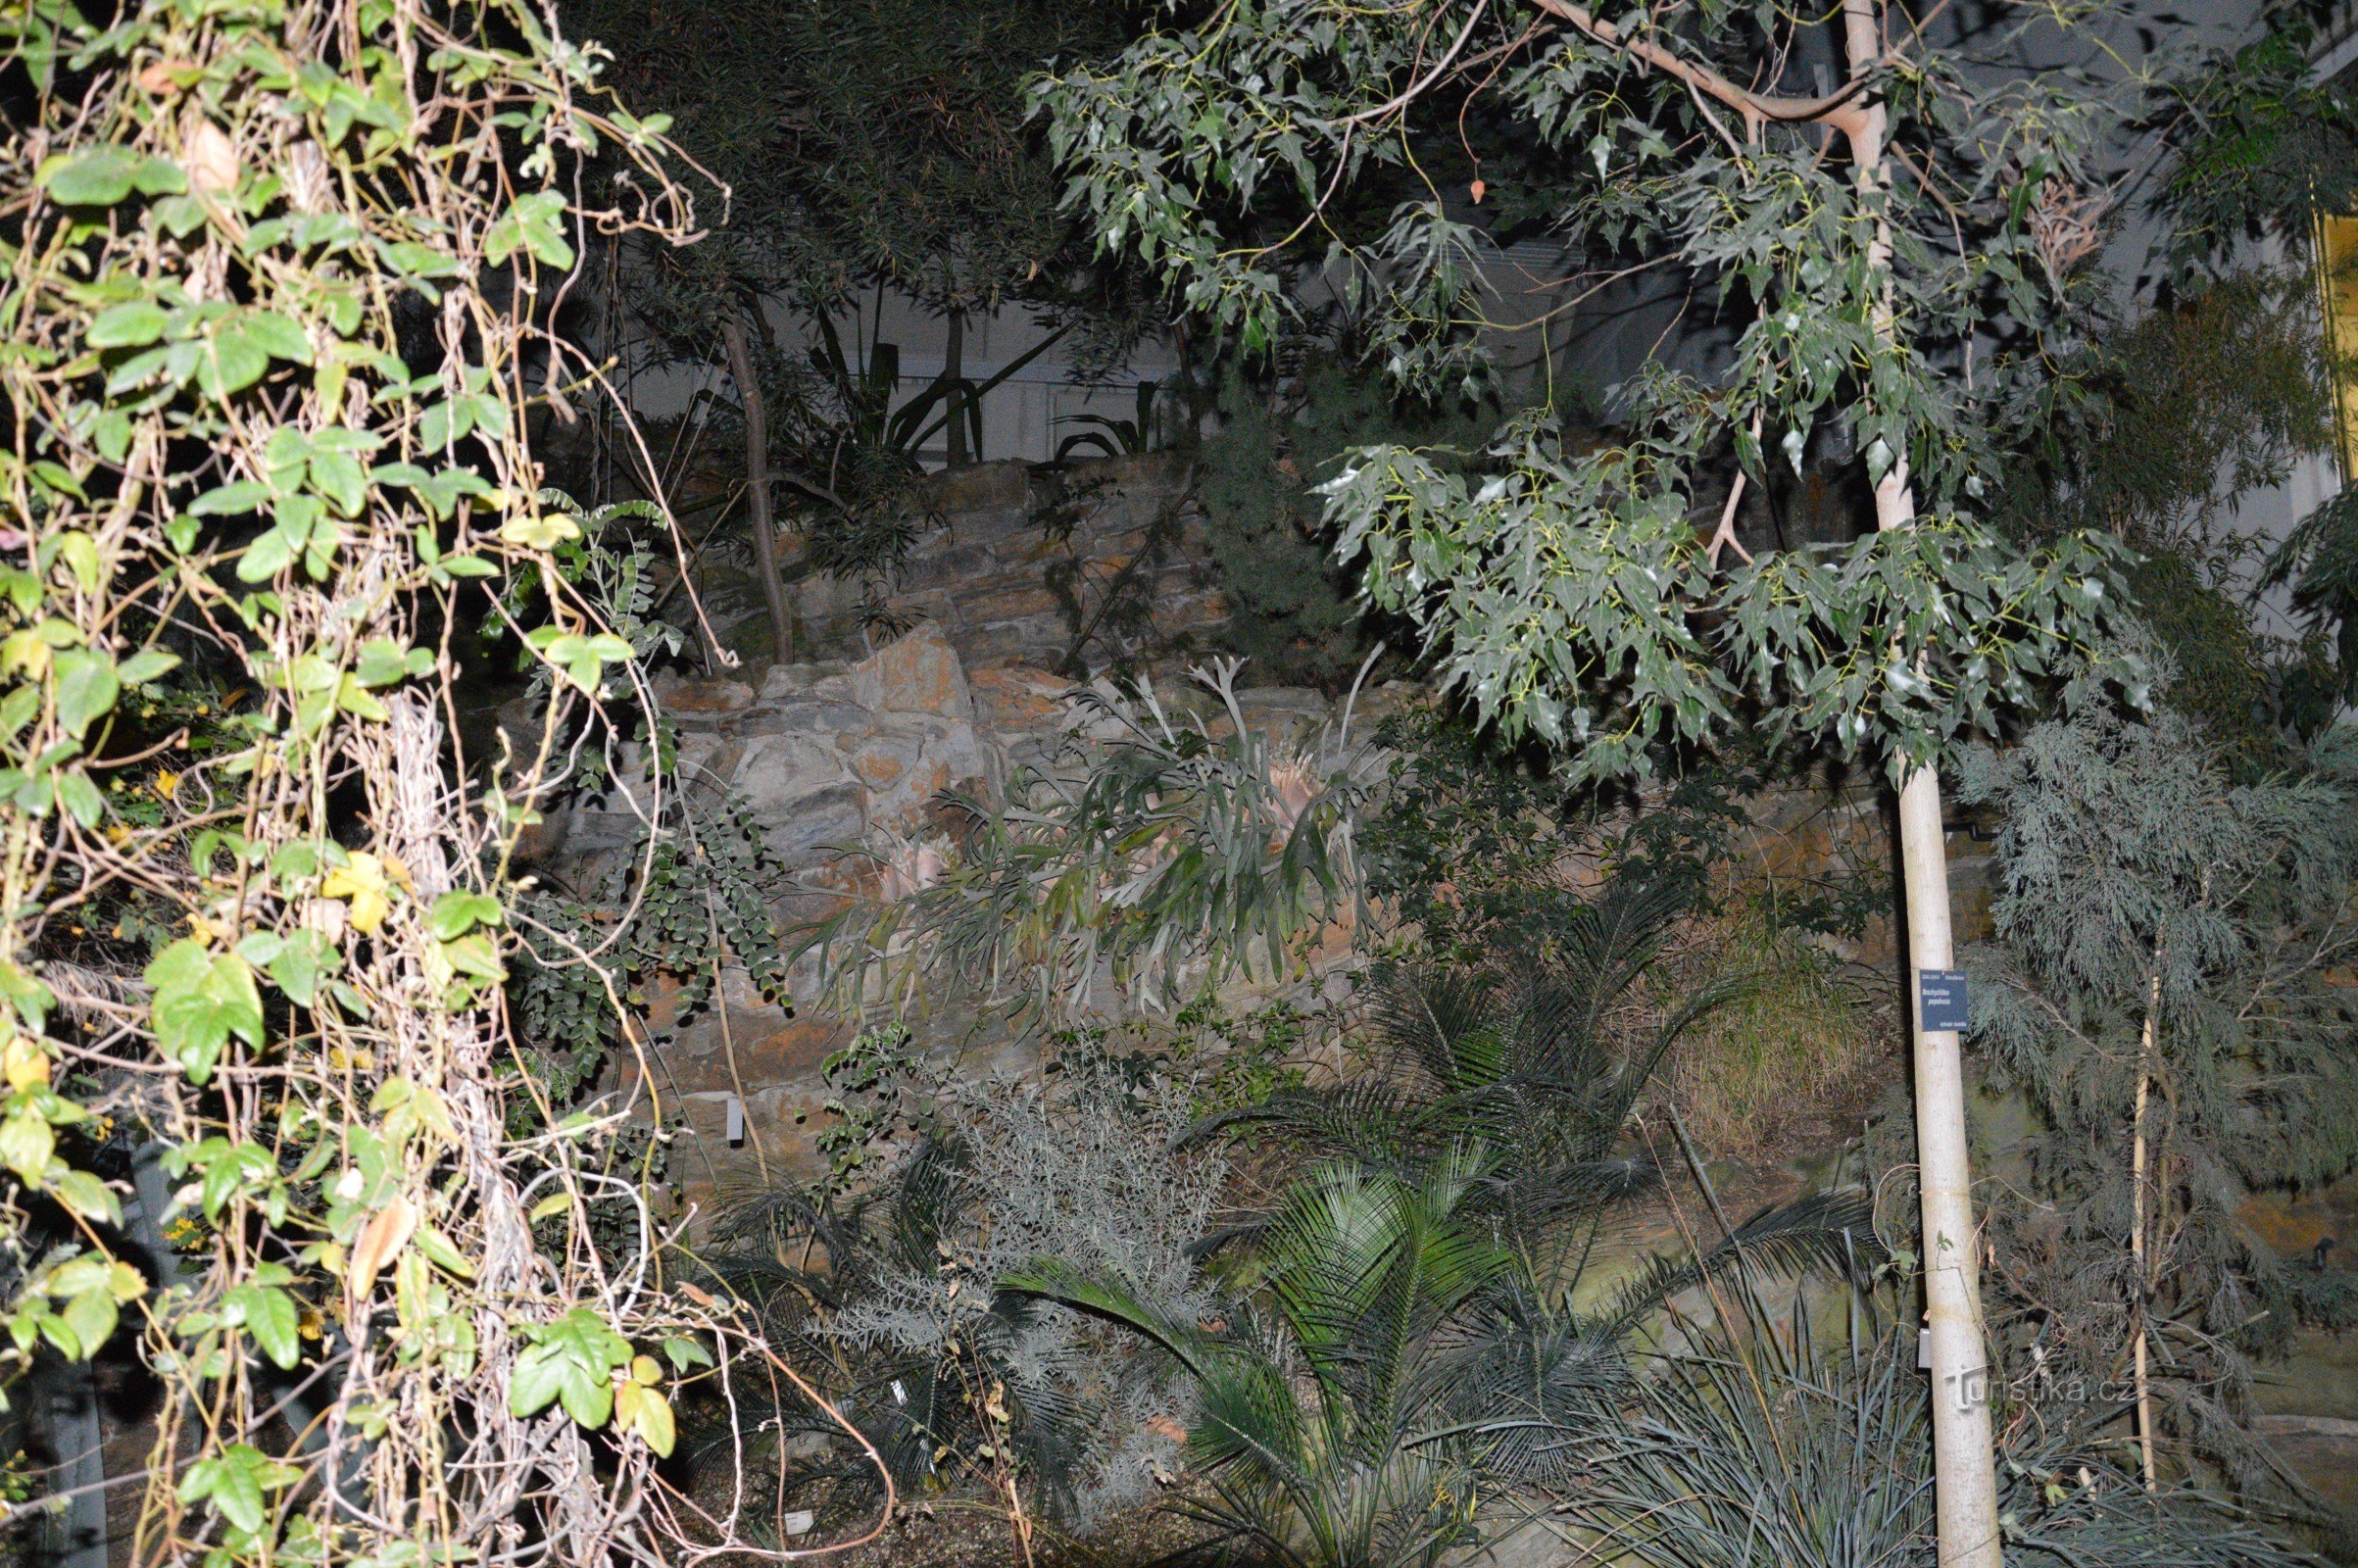 Botanični vrt rastlinjak Fata morgana ponoči